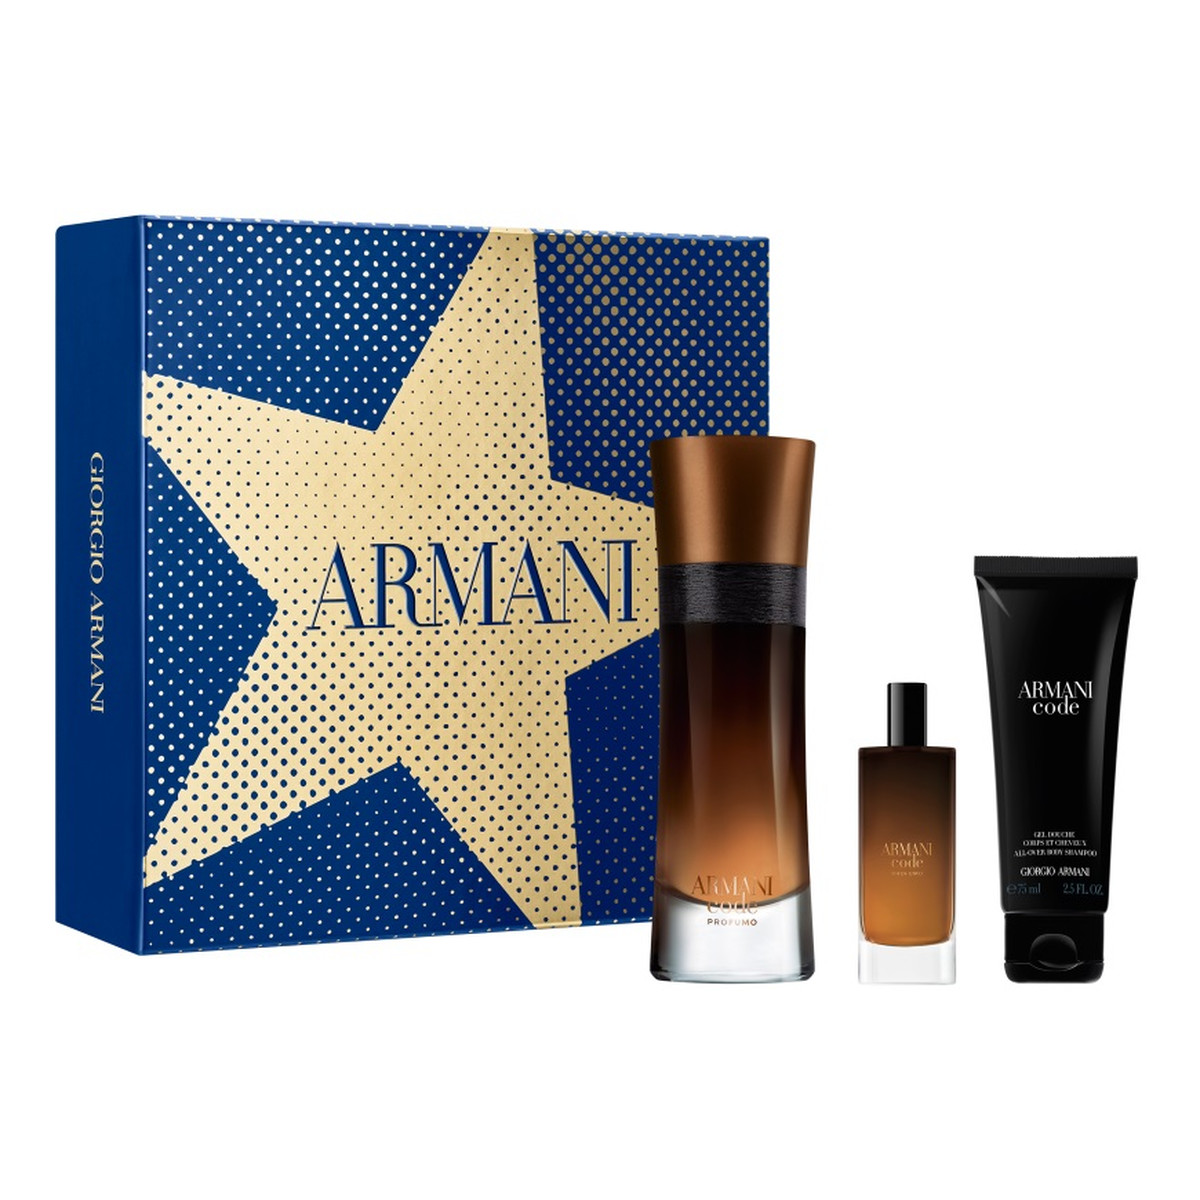 Giorgio Armani Armani Code Profumo Pour Homme Zestaw woda perfumowana spray 60ml + woda perfumowana spray 15ml + żel pod prysznic 75ml